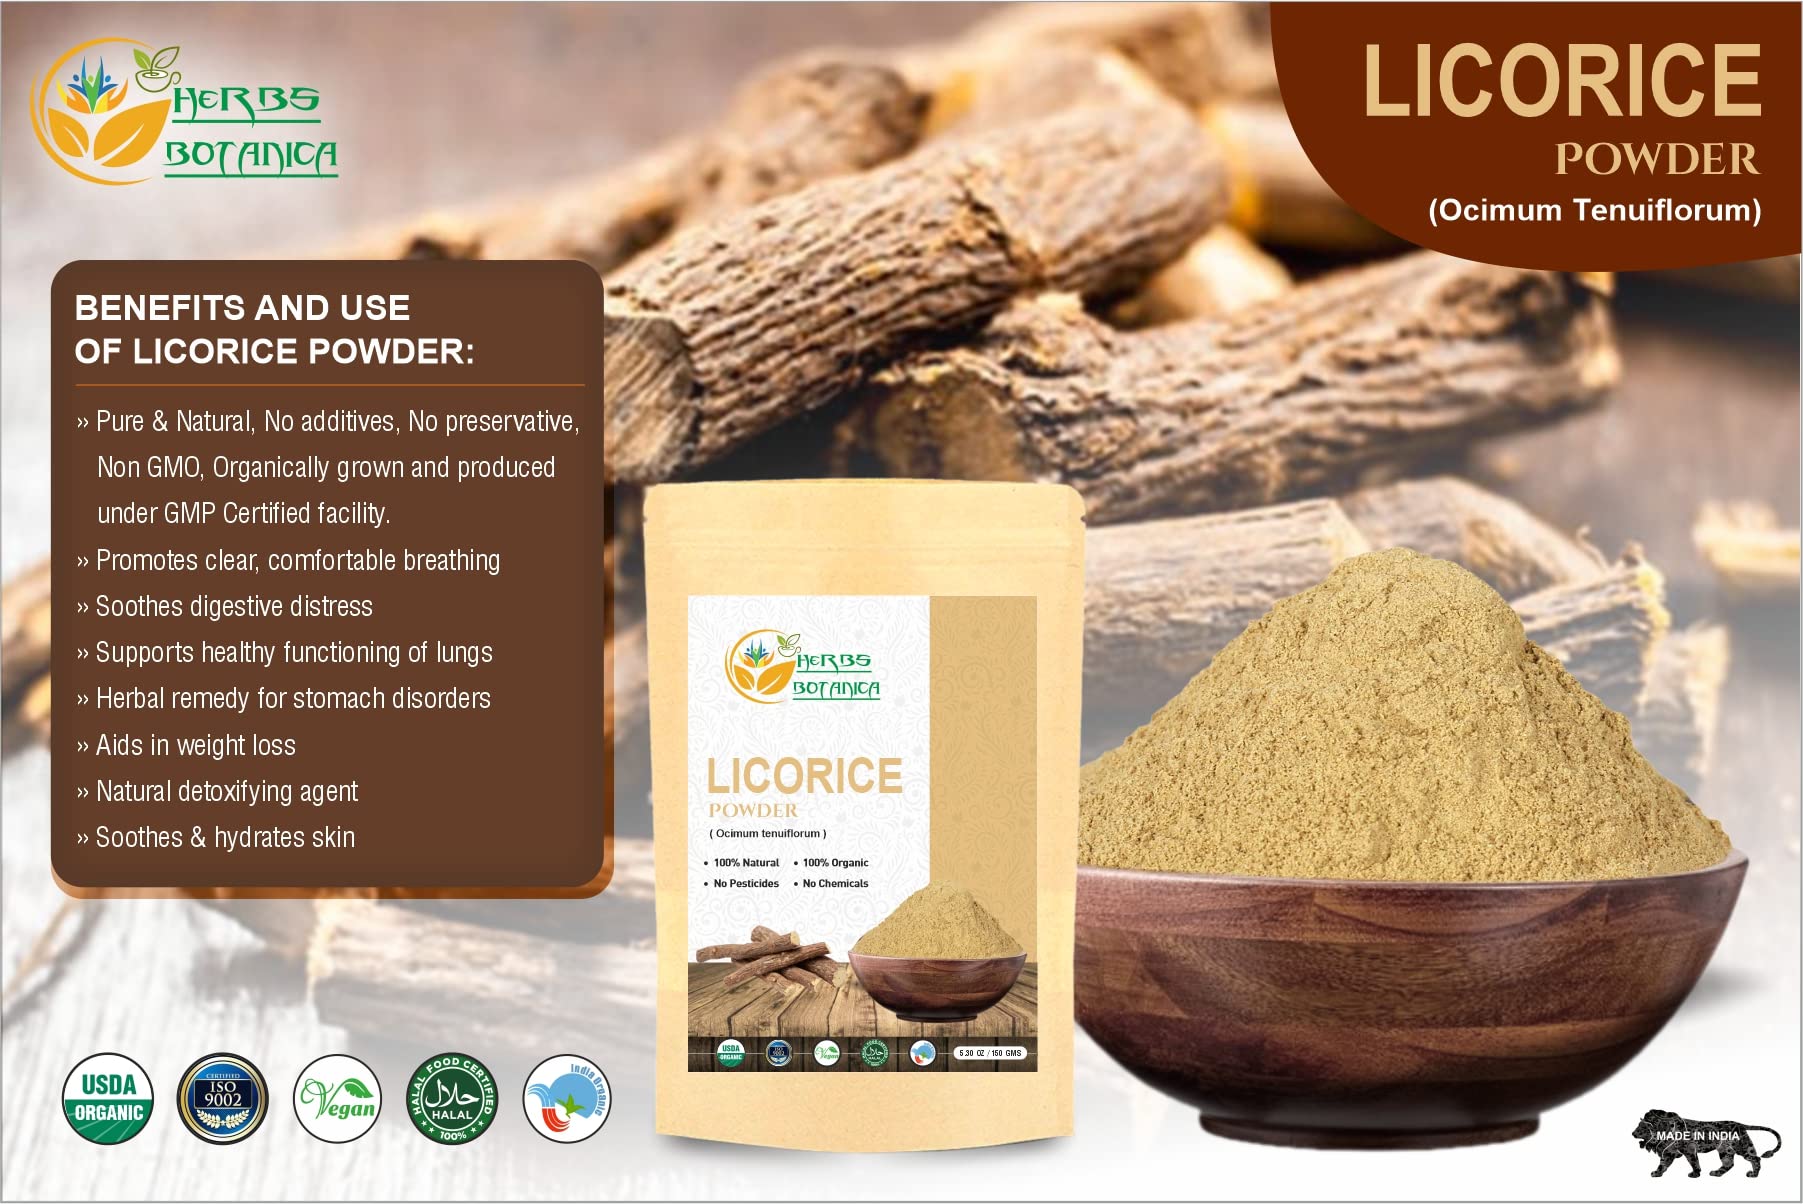 Herbs Botanica 100% Natural Licorice Root Powder Mulethi Powder 5.5 oz / 150gm | Yastimadu Powder (Glycyrrhiza Glabra)